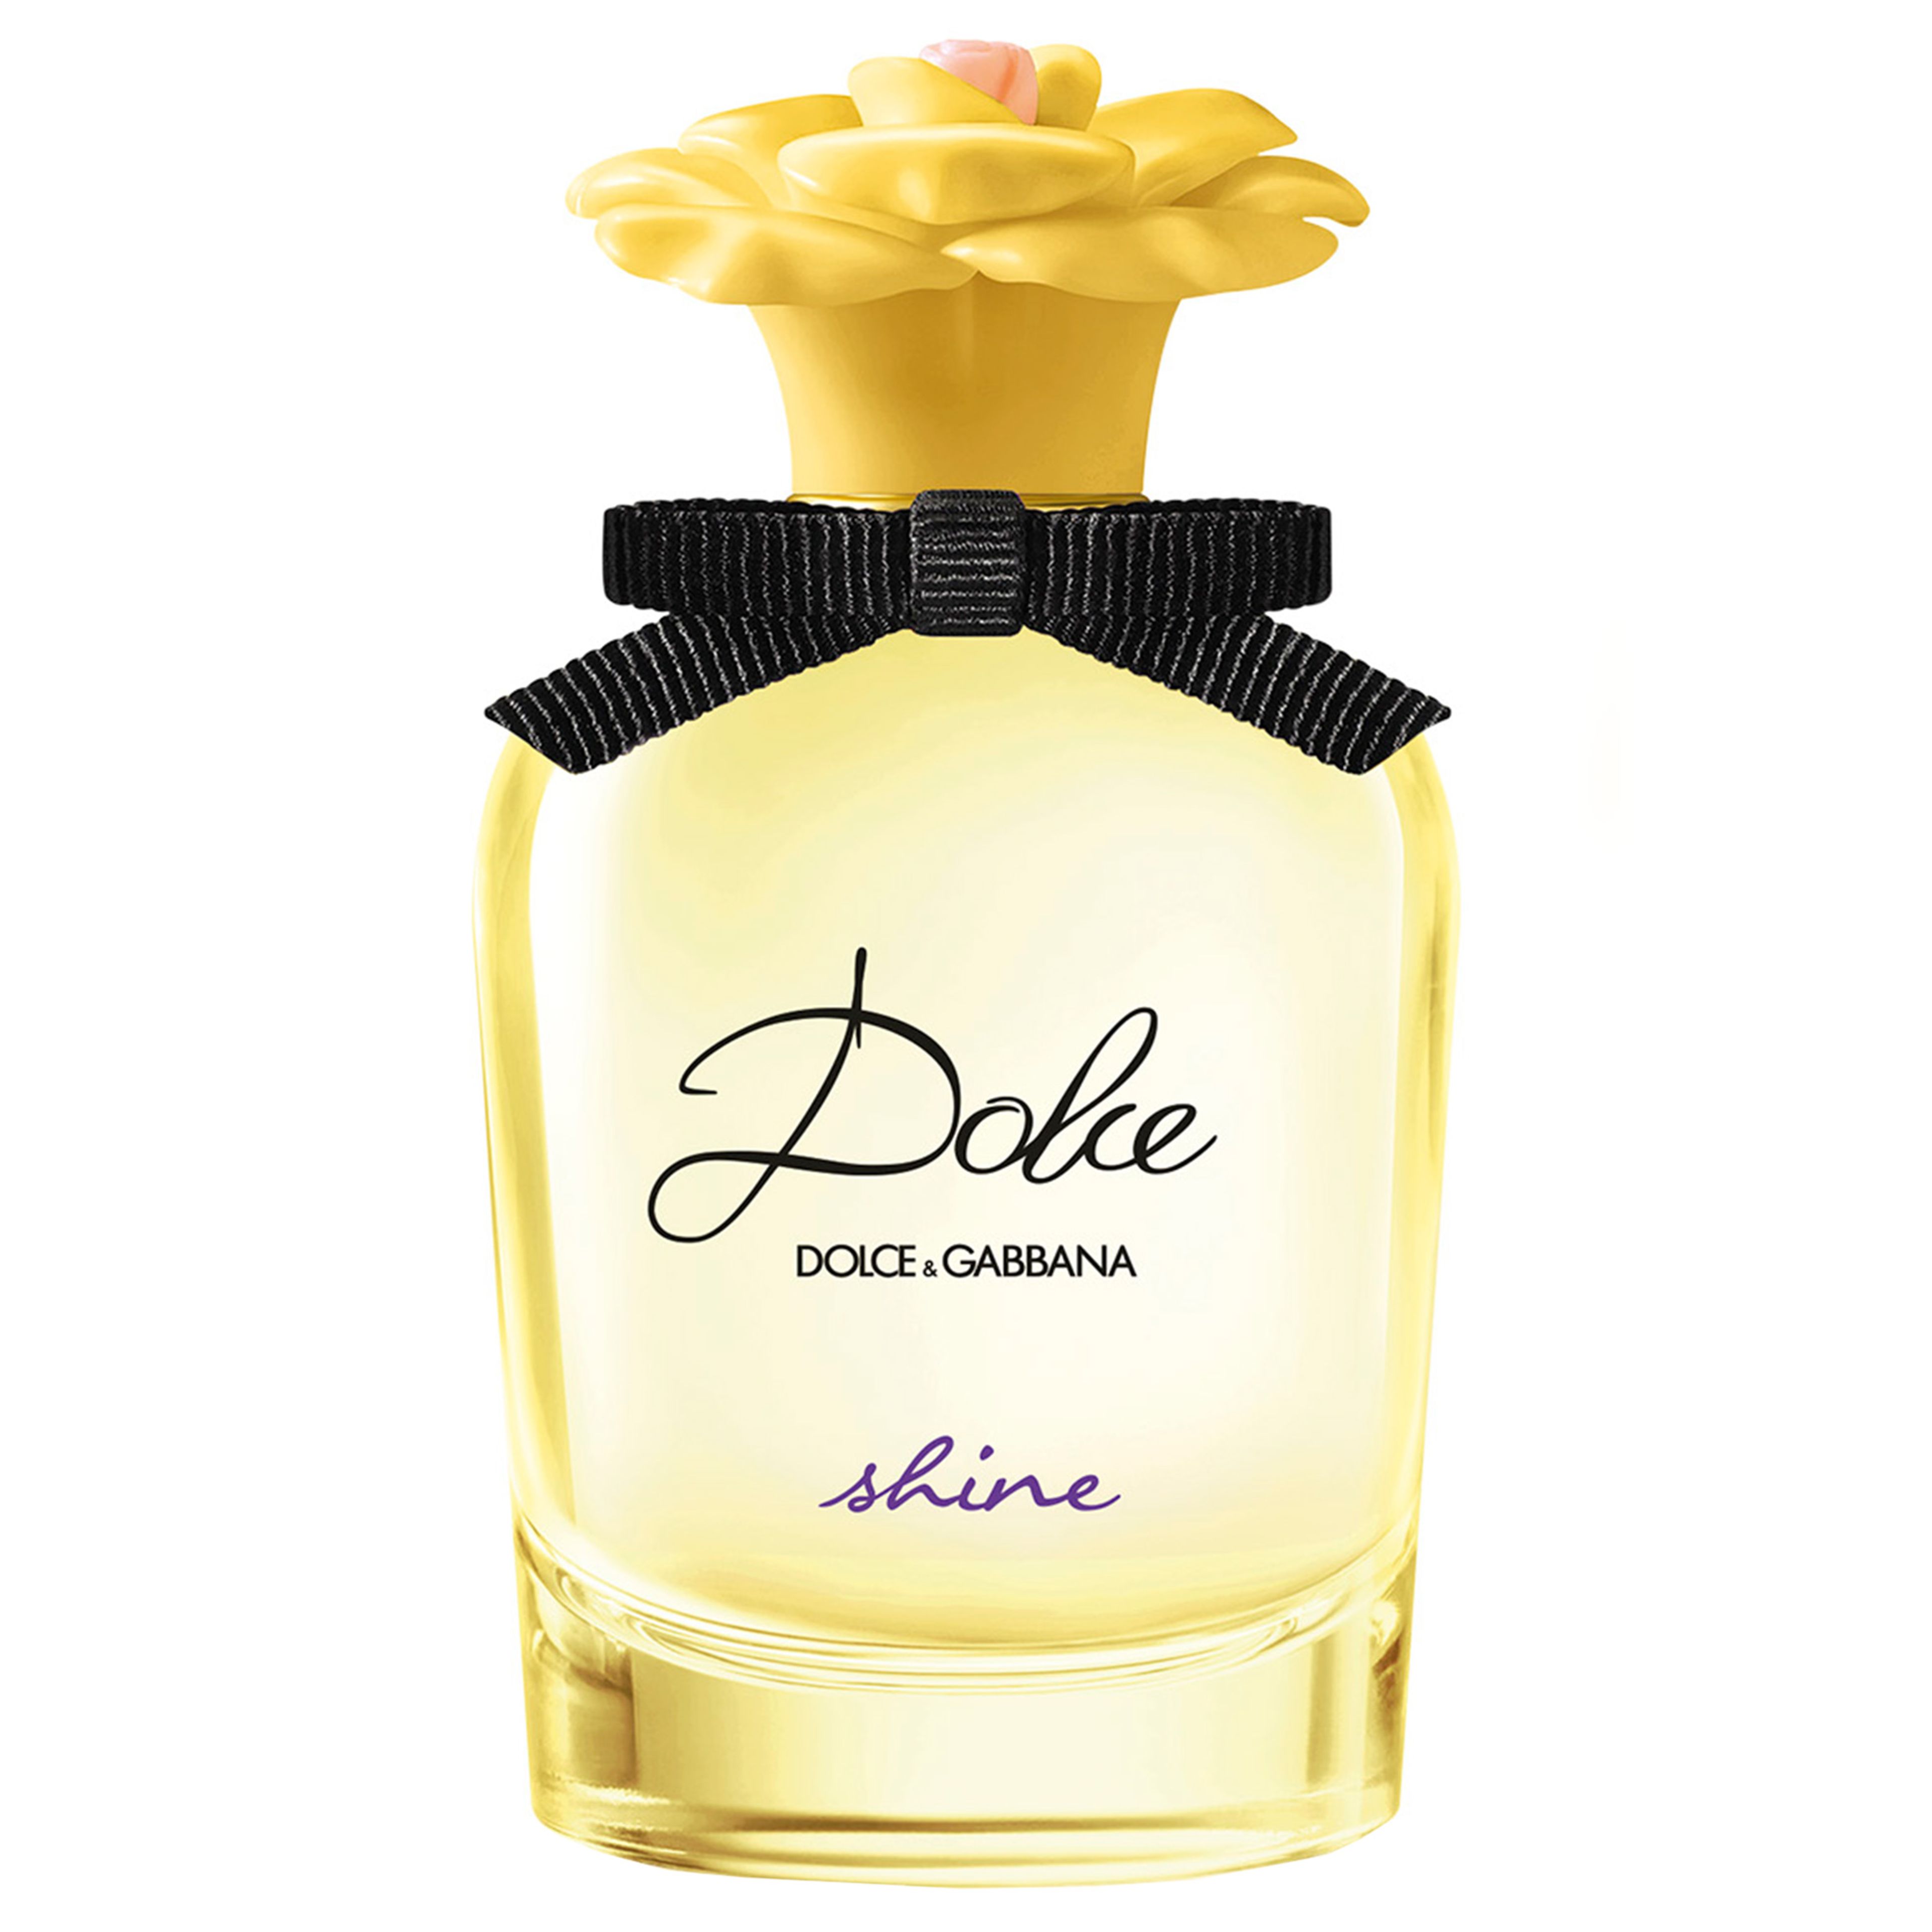 Dolce & Gabbana Dolce Shine Eau De Parfum 1